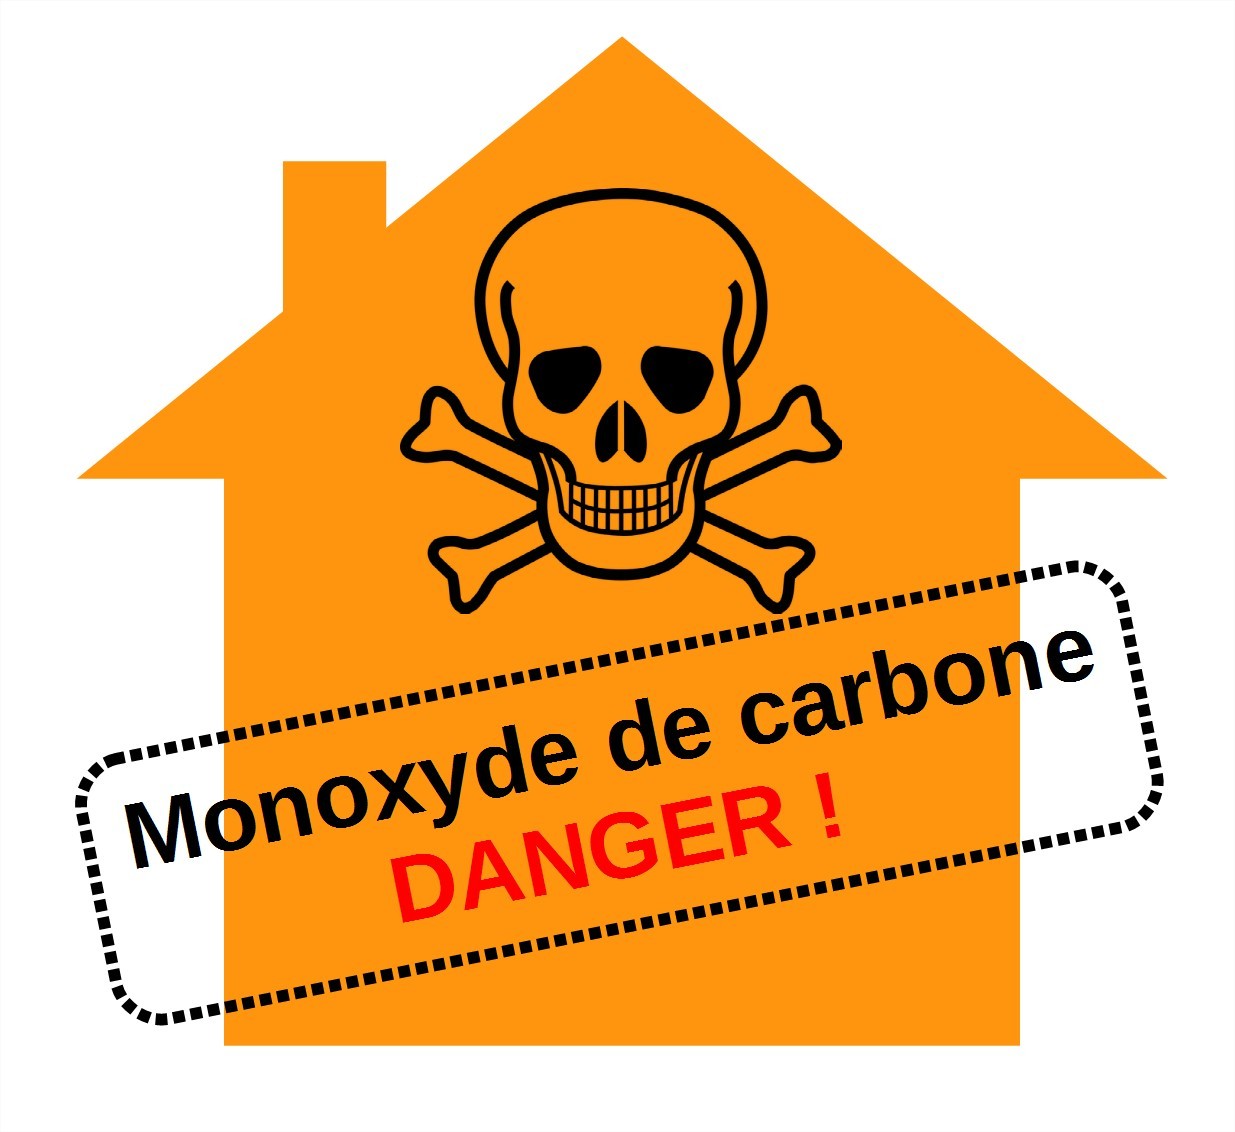 Monoxyde de carbone : danger !